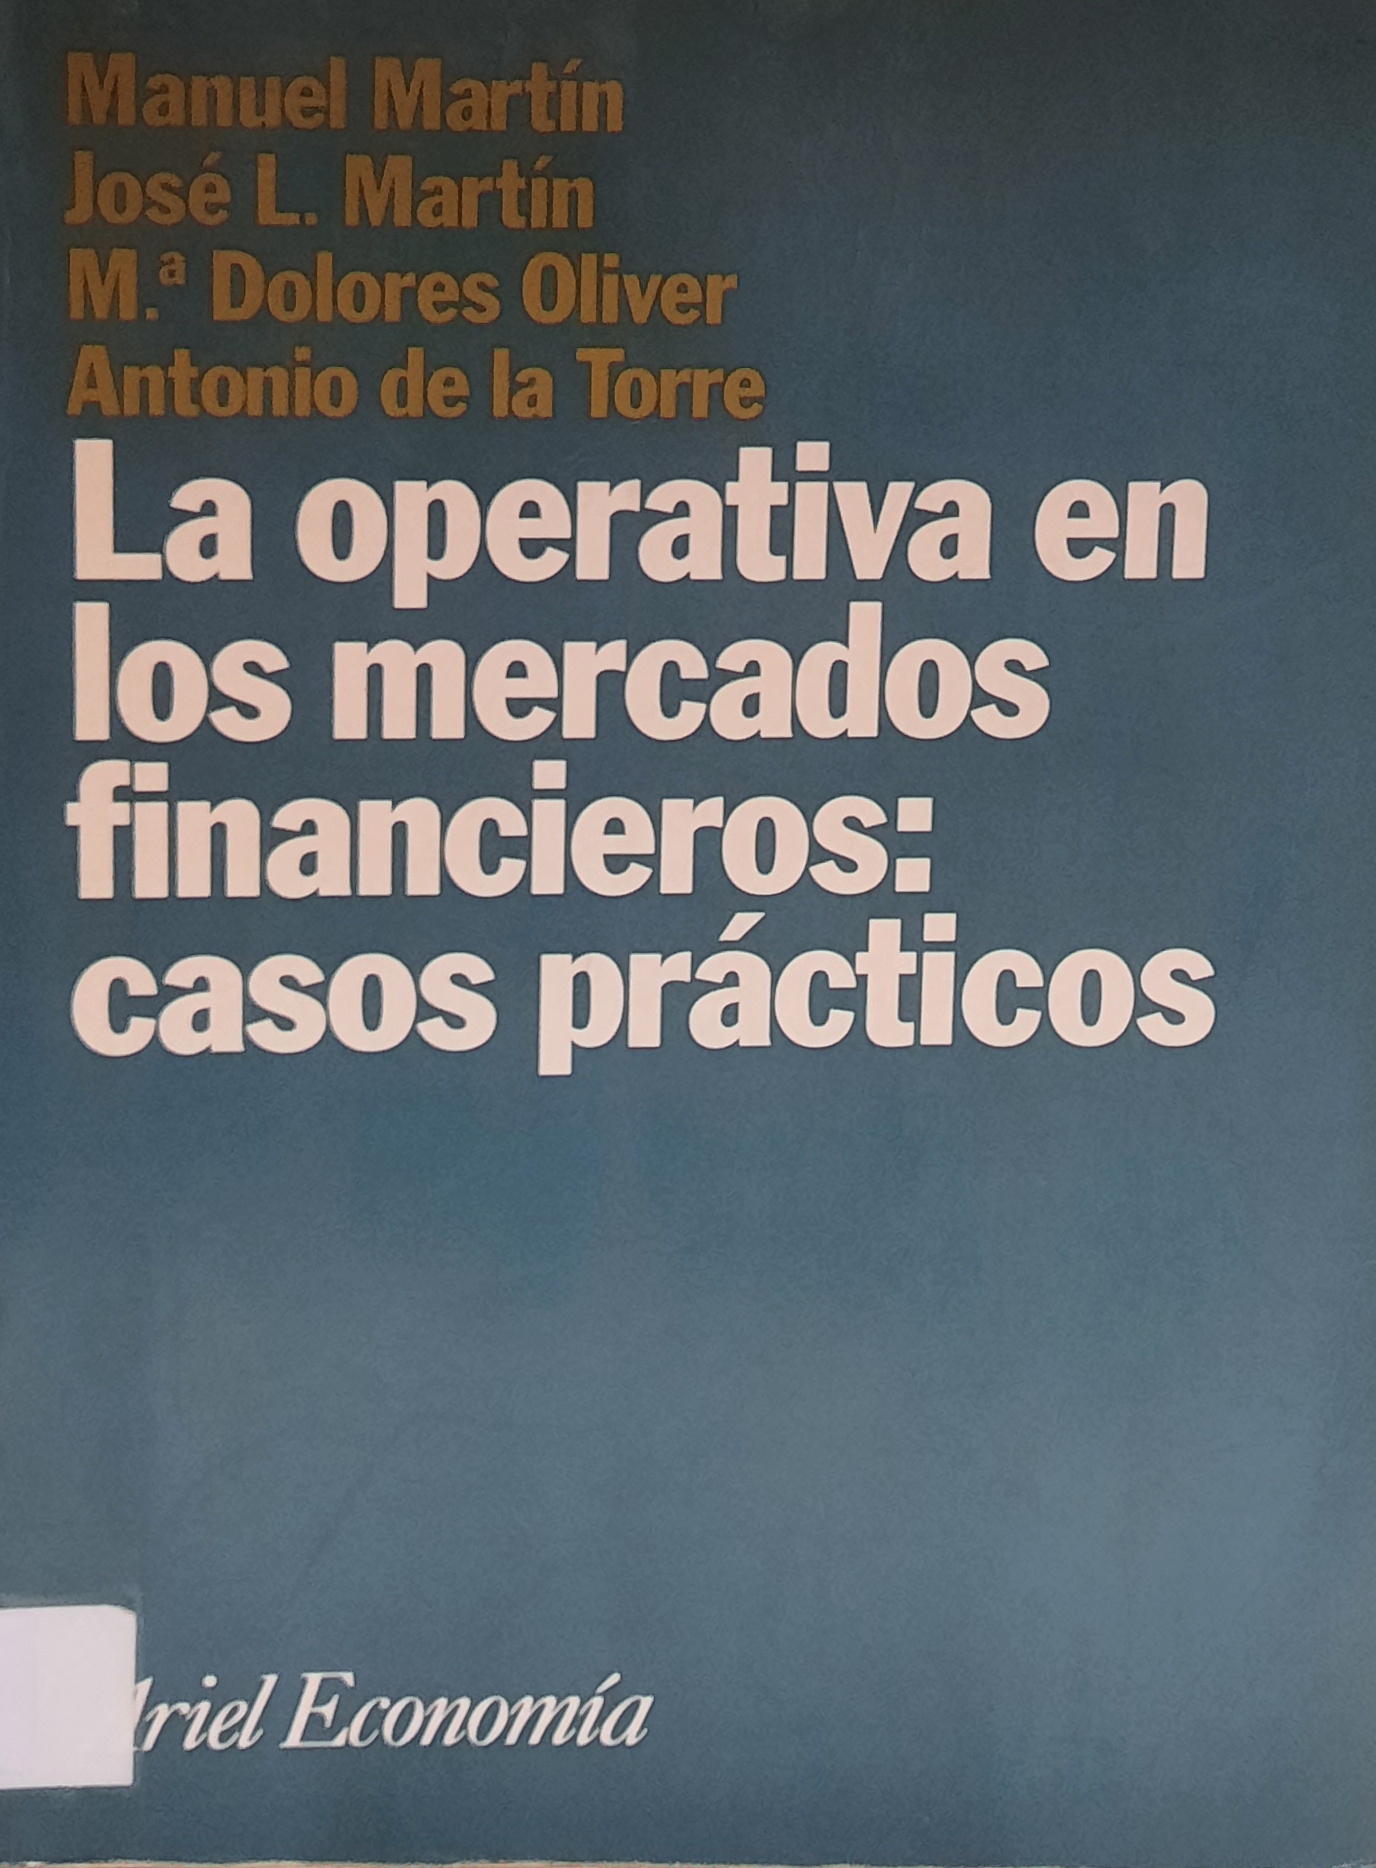 Imagen de portada del libro La operativa en los mercados financieros: